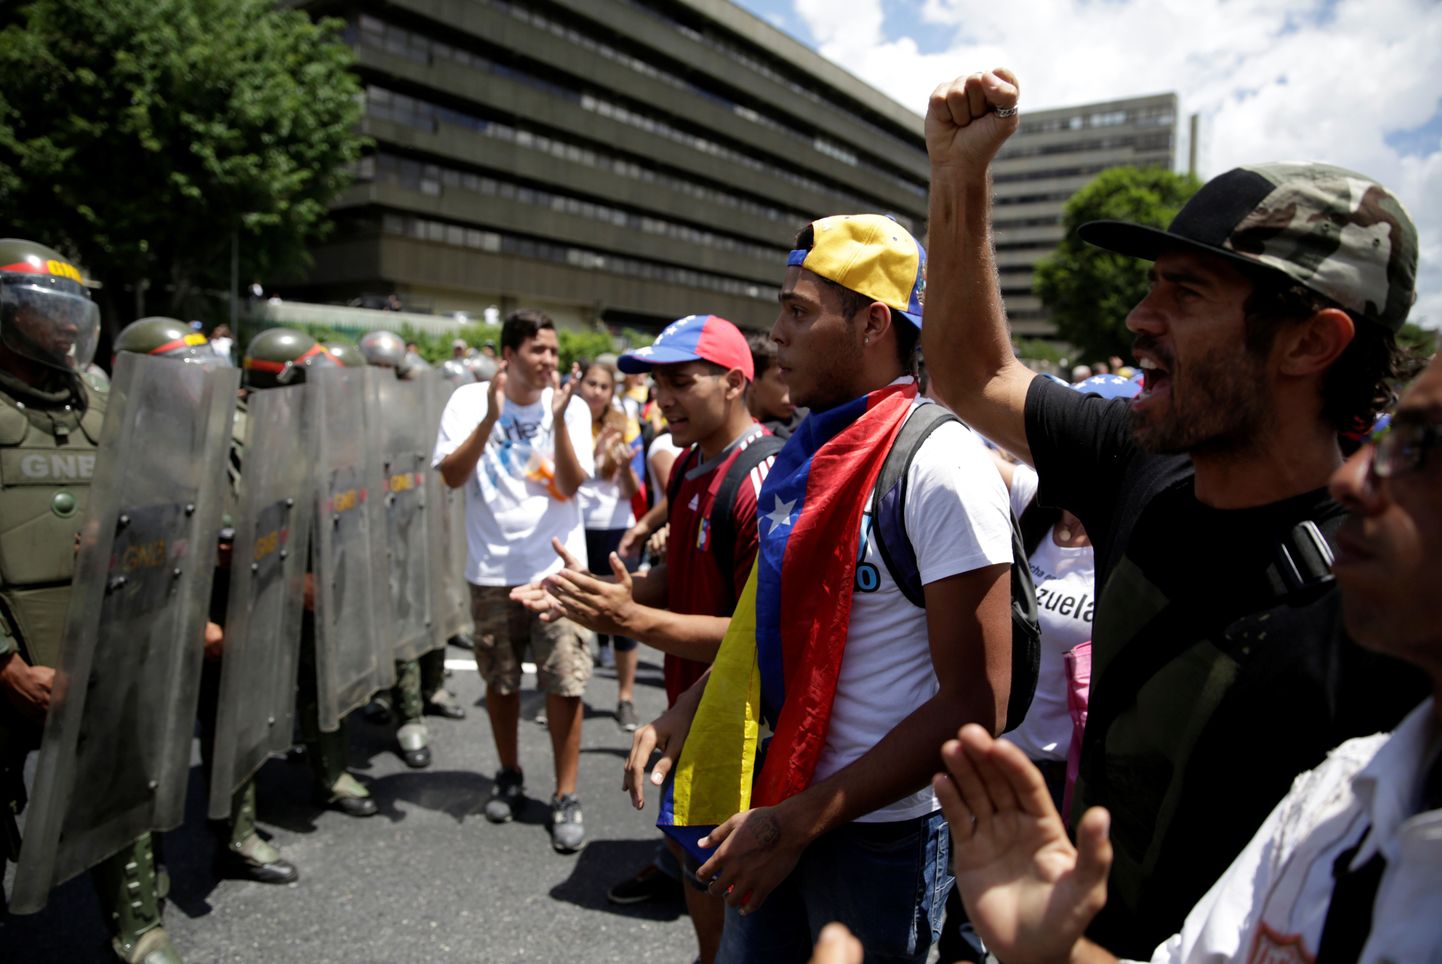 Caracases toimus neljapäeval suur opositsiooni poolt korraldatud meeleavaldus, mis tõi tänavatele umbkaudu miljon inimest. Meeleavalduse käigus avaldati pahameelt president Nicolas Maduro sotsialistliku režiimi vastu. Maduro ametiaja jooksul on riigi majandus olnud kiires languses ning inimeste elujärg on drastiliselt halvenenud.